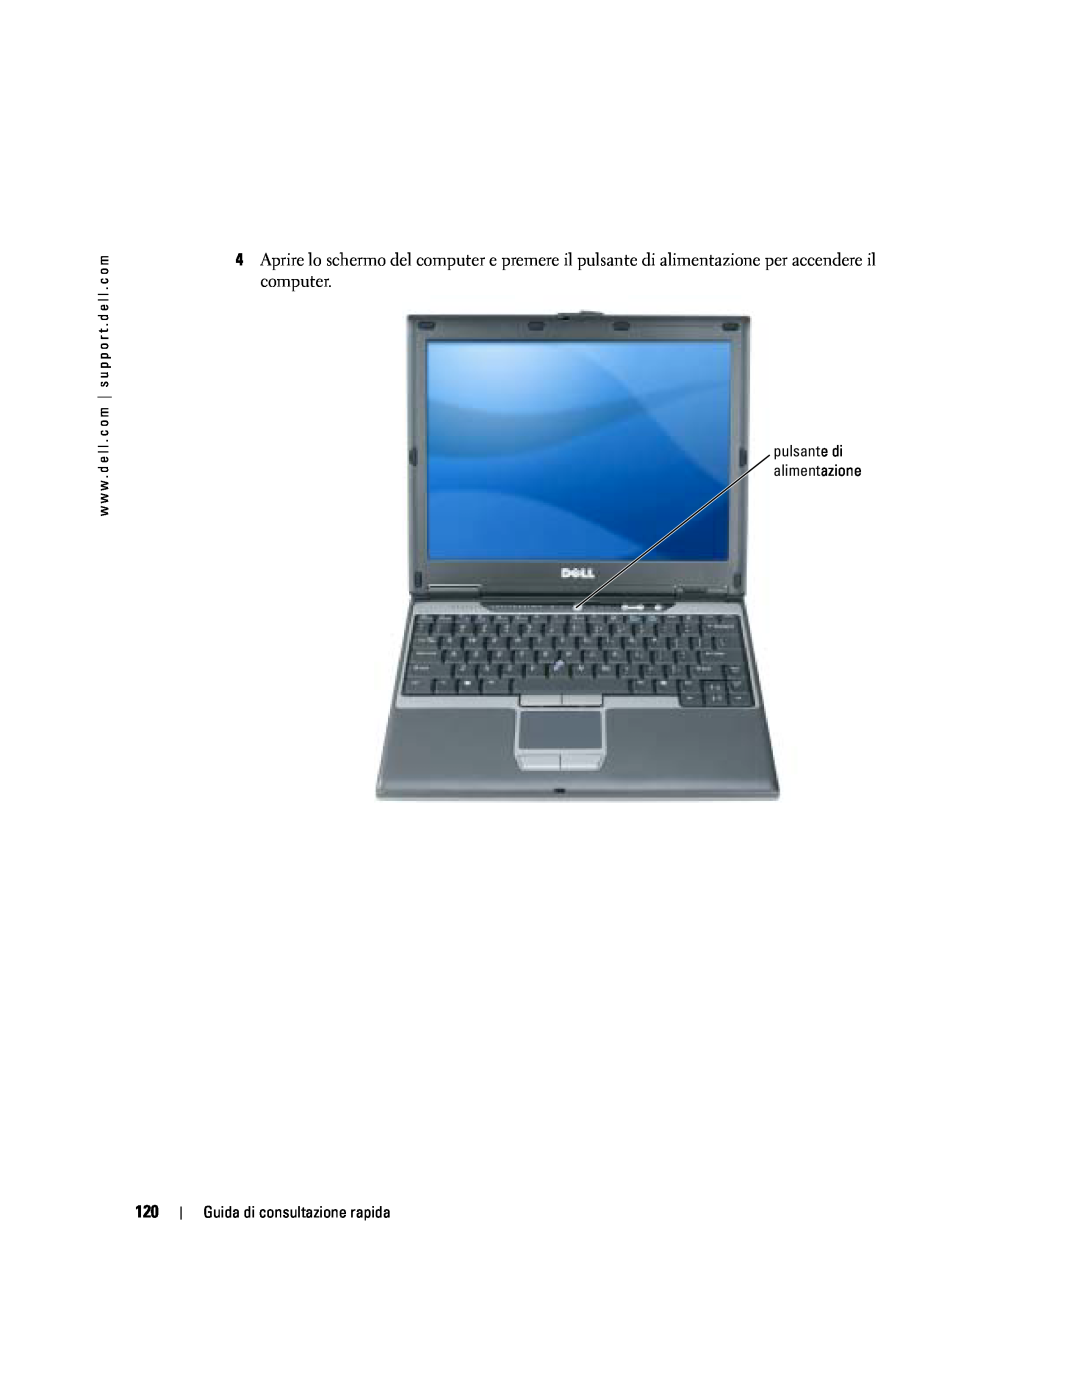 Dell PP06S manual Guida di consultazione rapida 